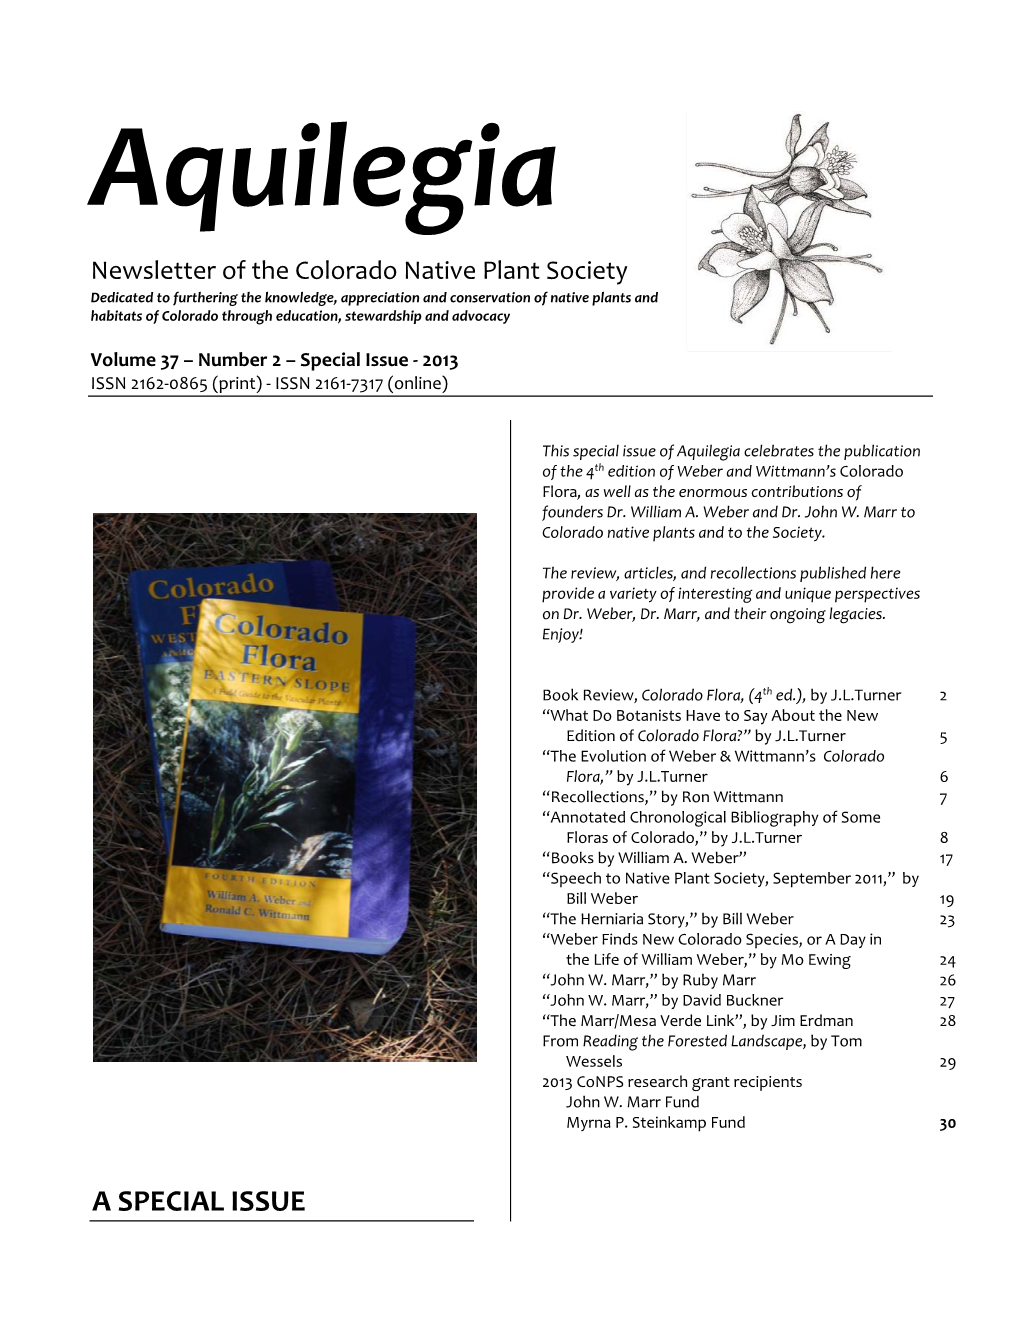 Aquilegia 37 2 Special Issue